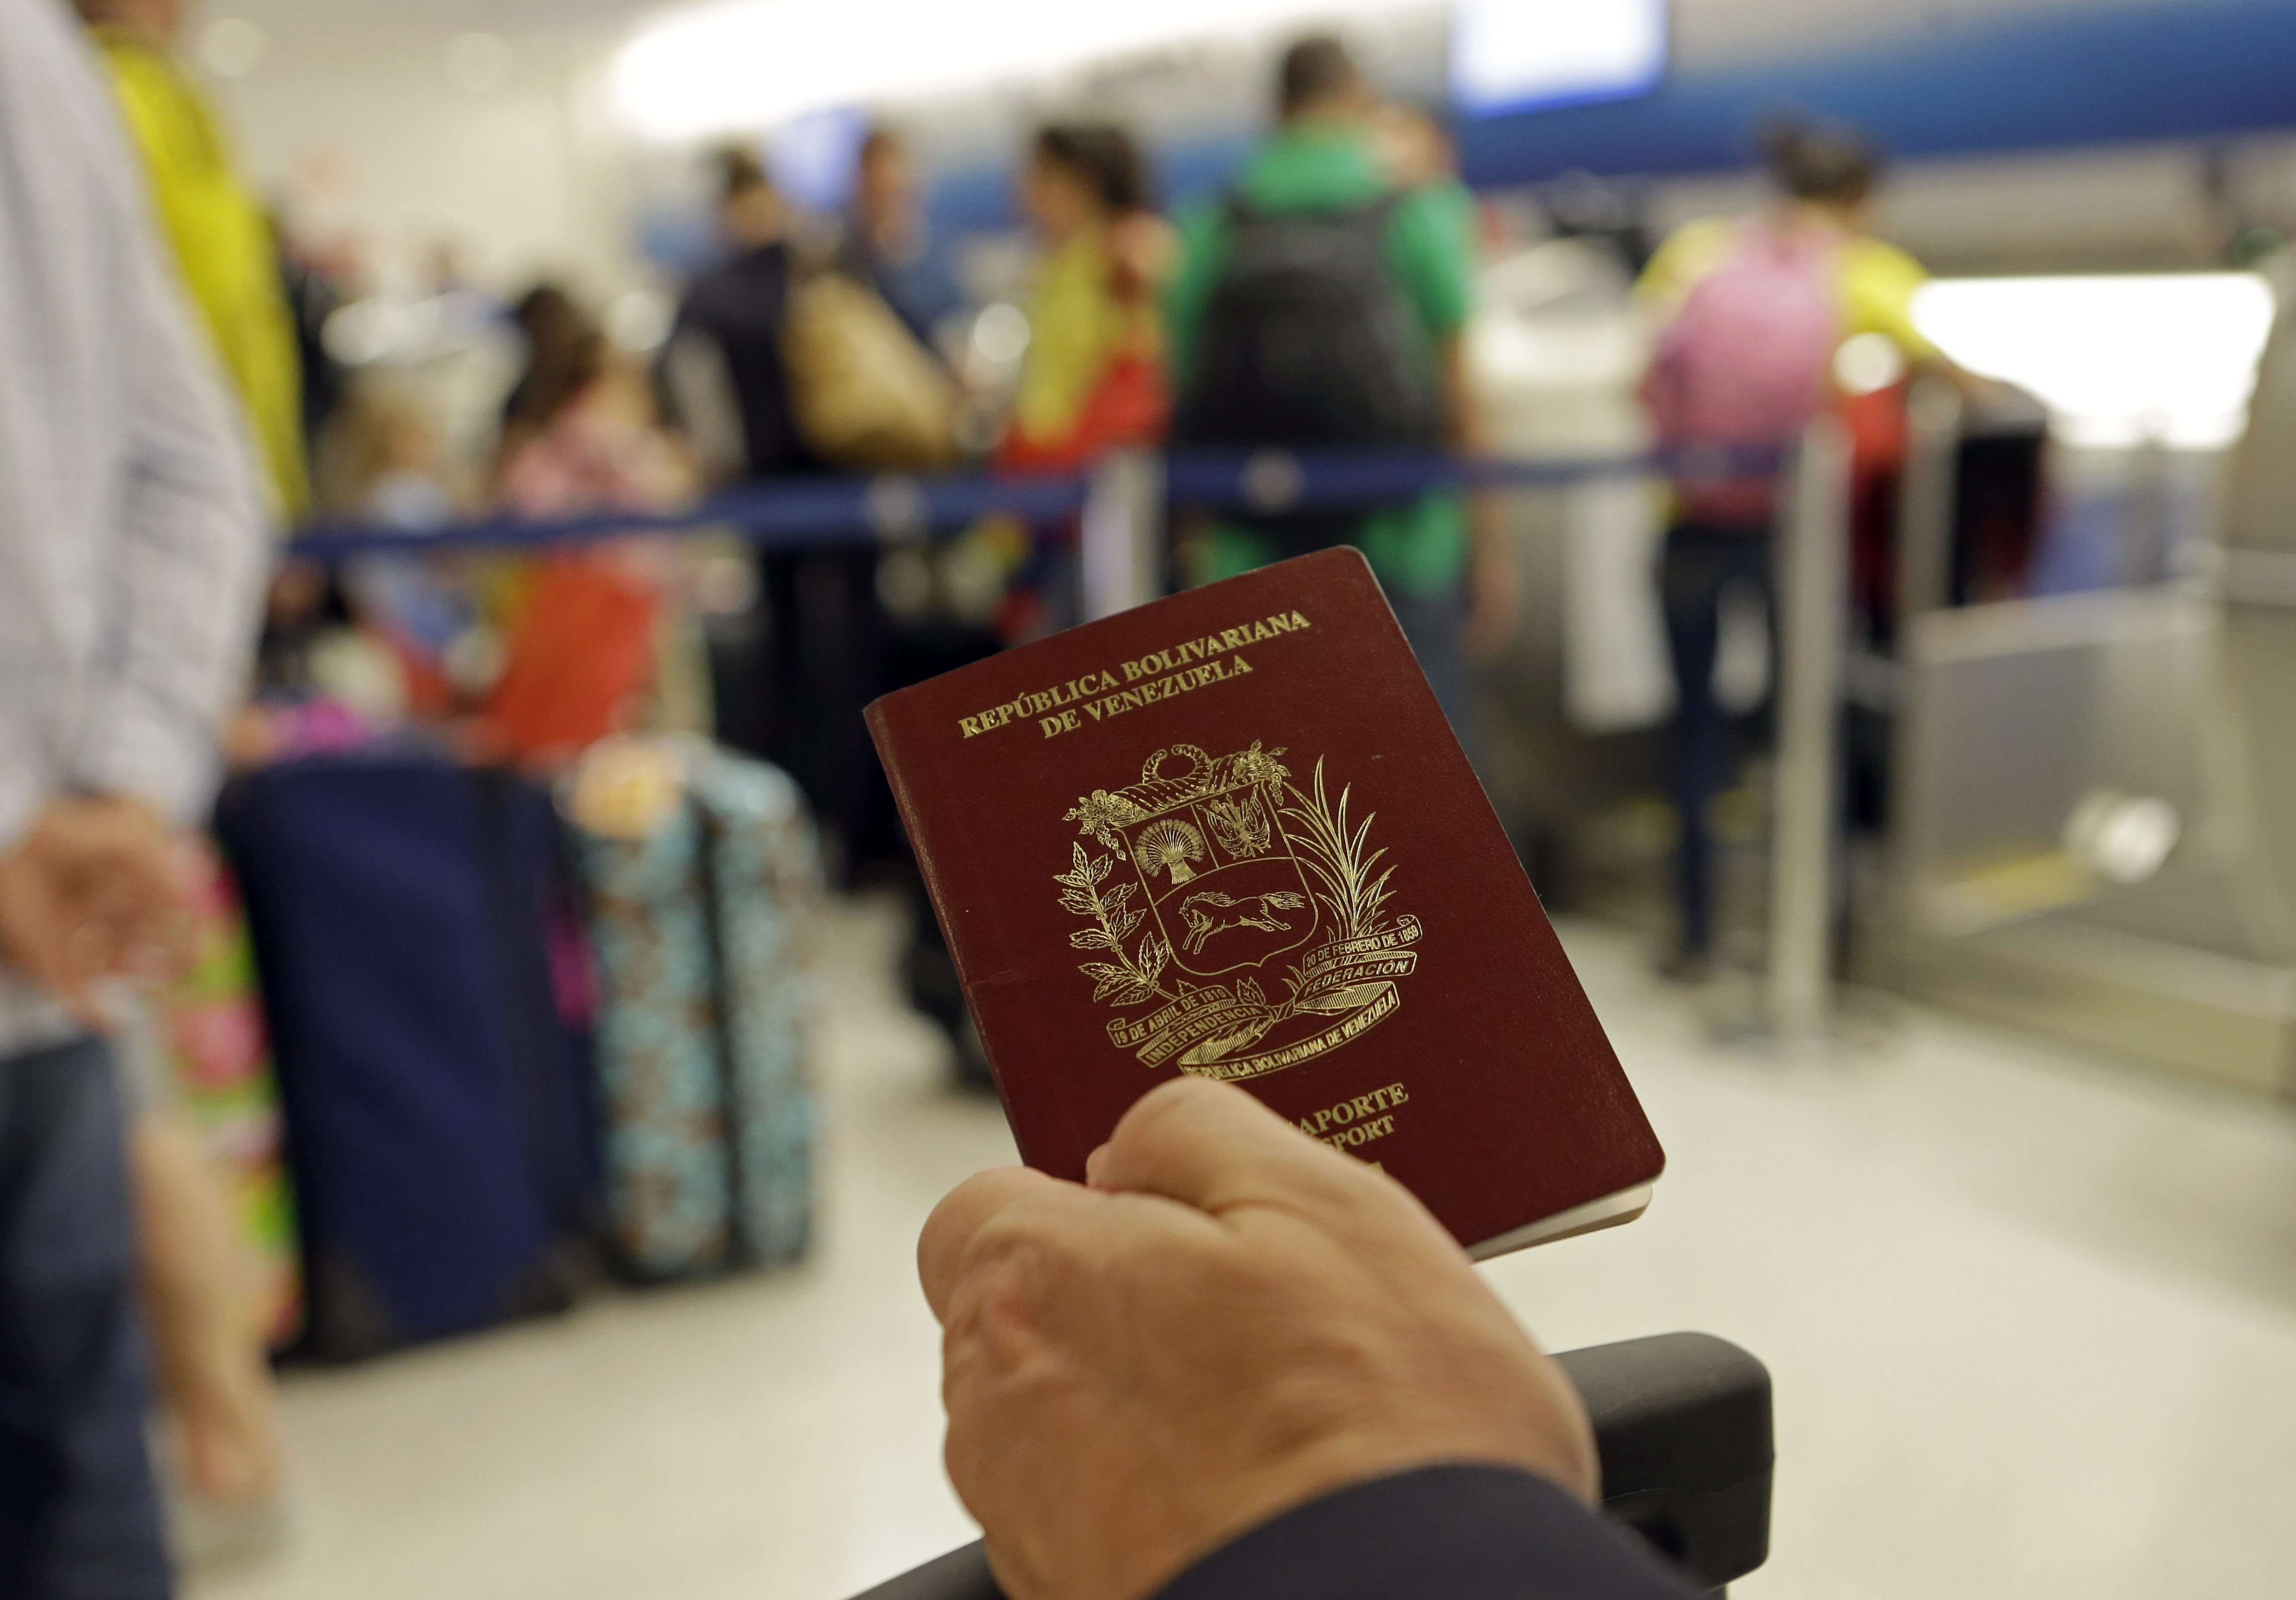 Los pasaportes venezolanos para el extremismo islámico